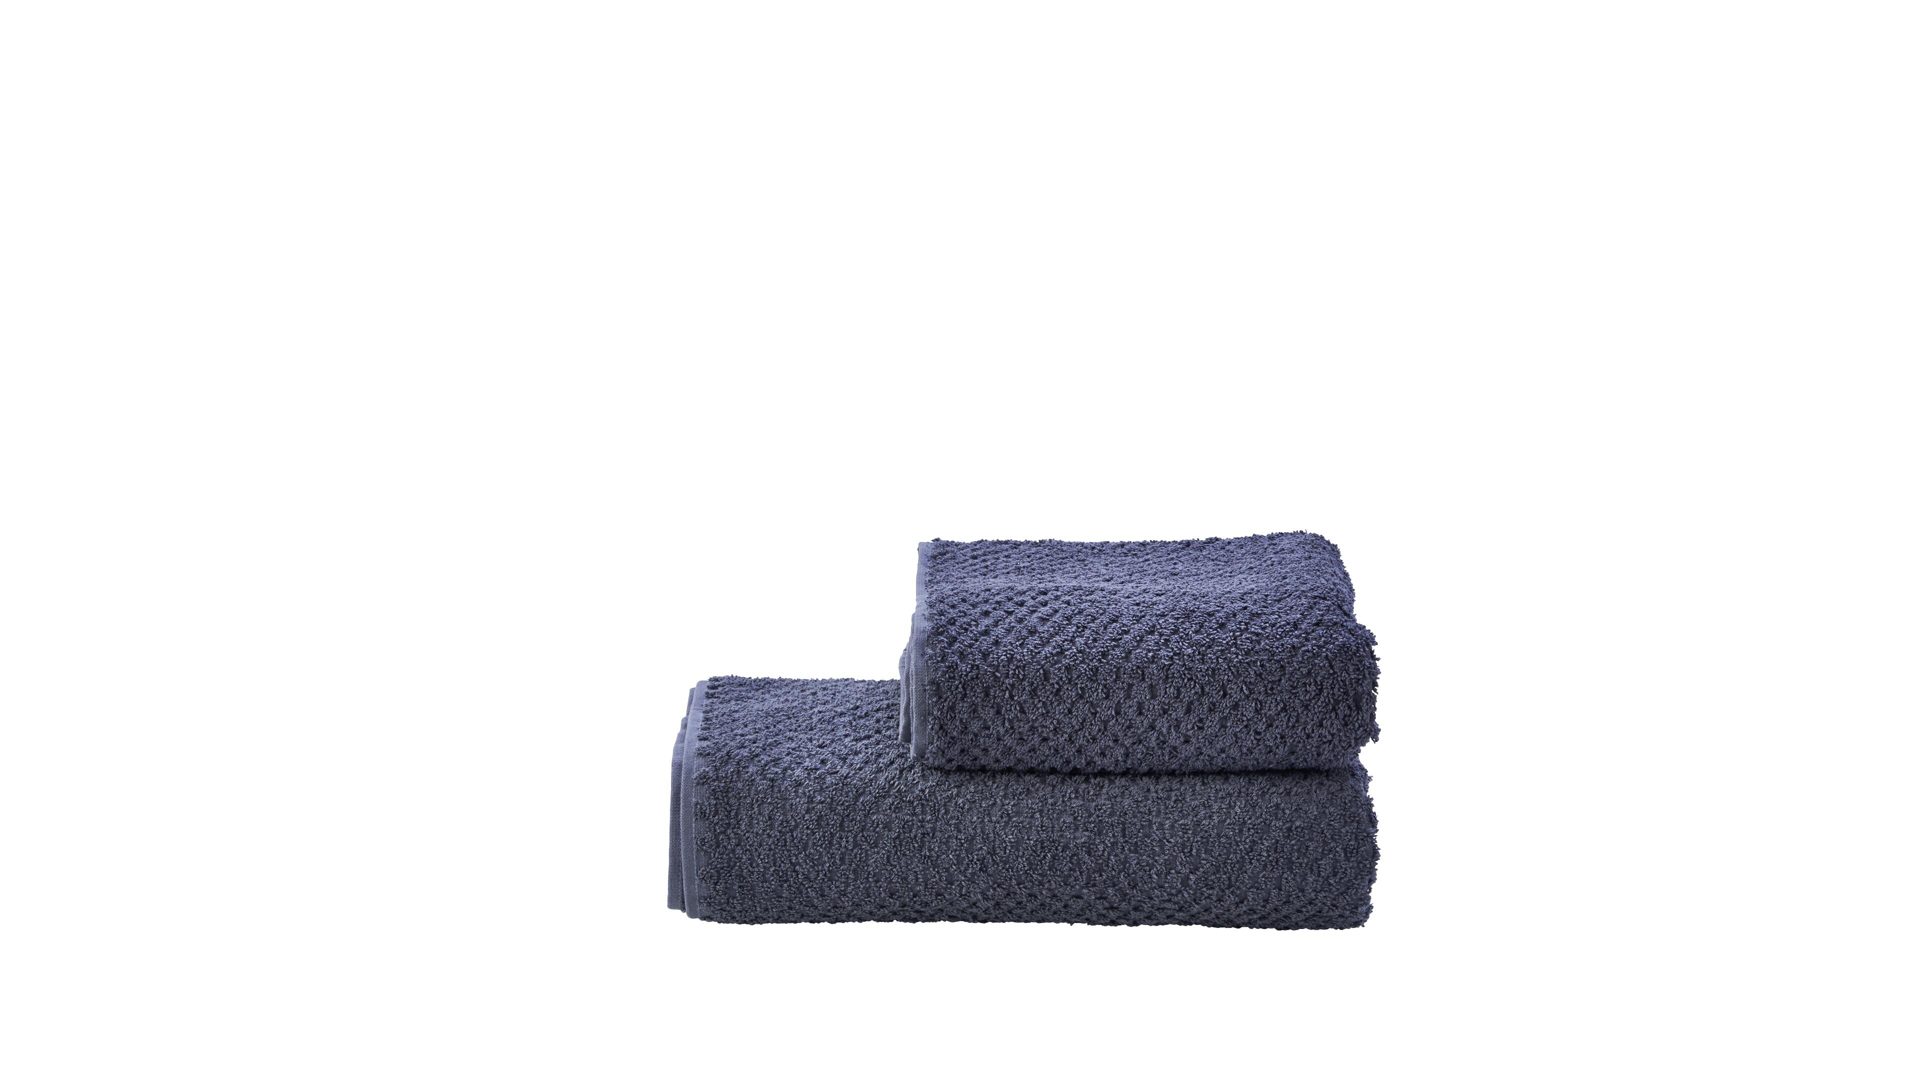 Handtuch-Set Done by karabel home company aus Stoff in Grau done Handtuch-Set Provence Honeycomb - Heimtextilien anthrazitfarbene Baumwolle  – zweiteilig